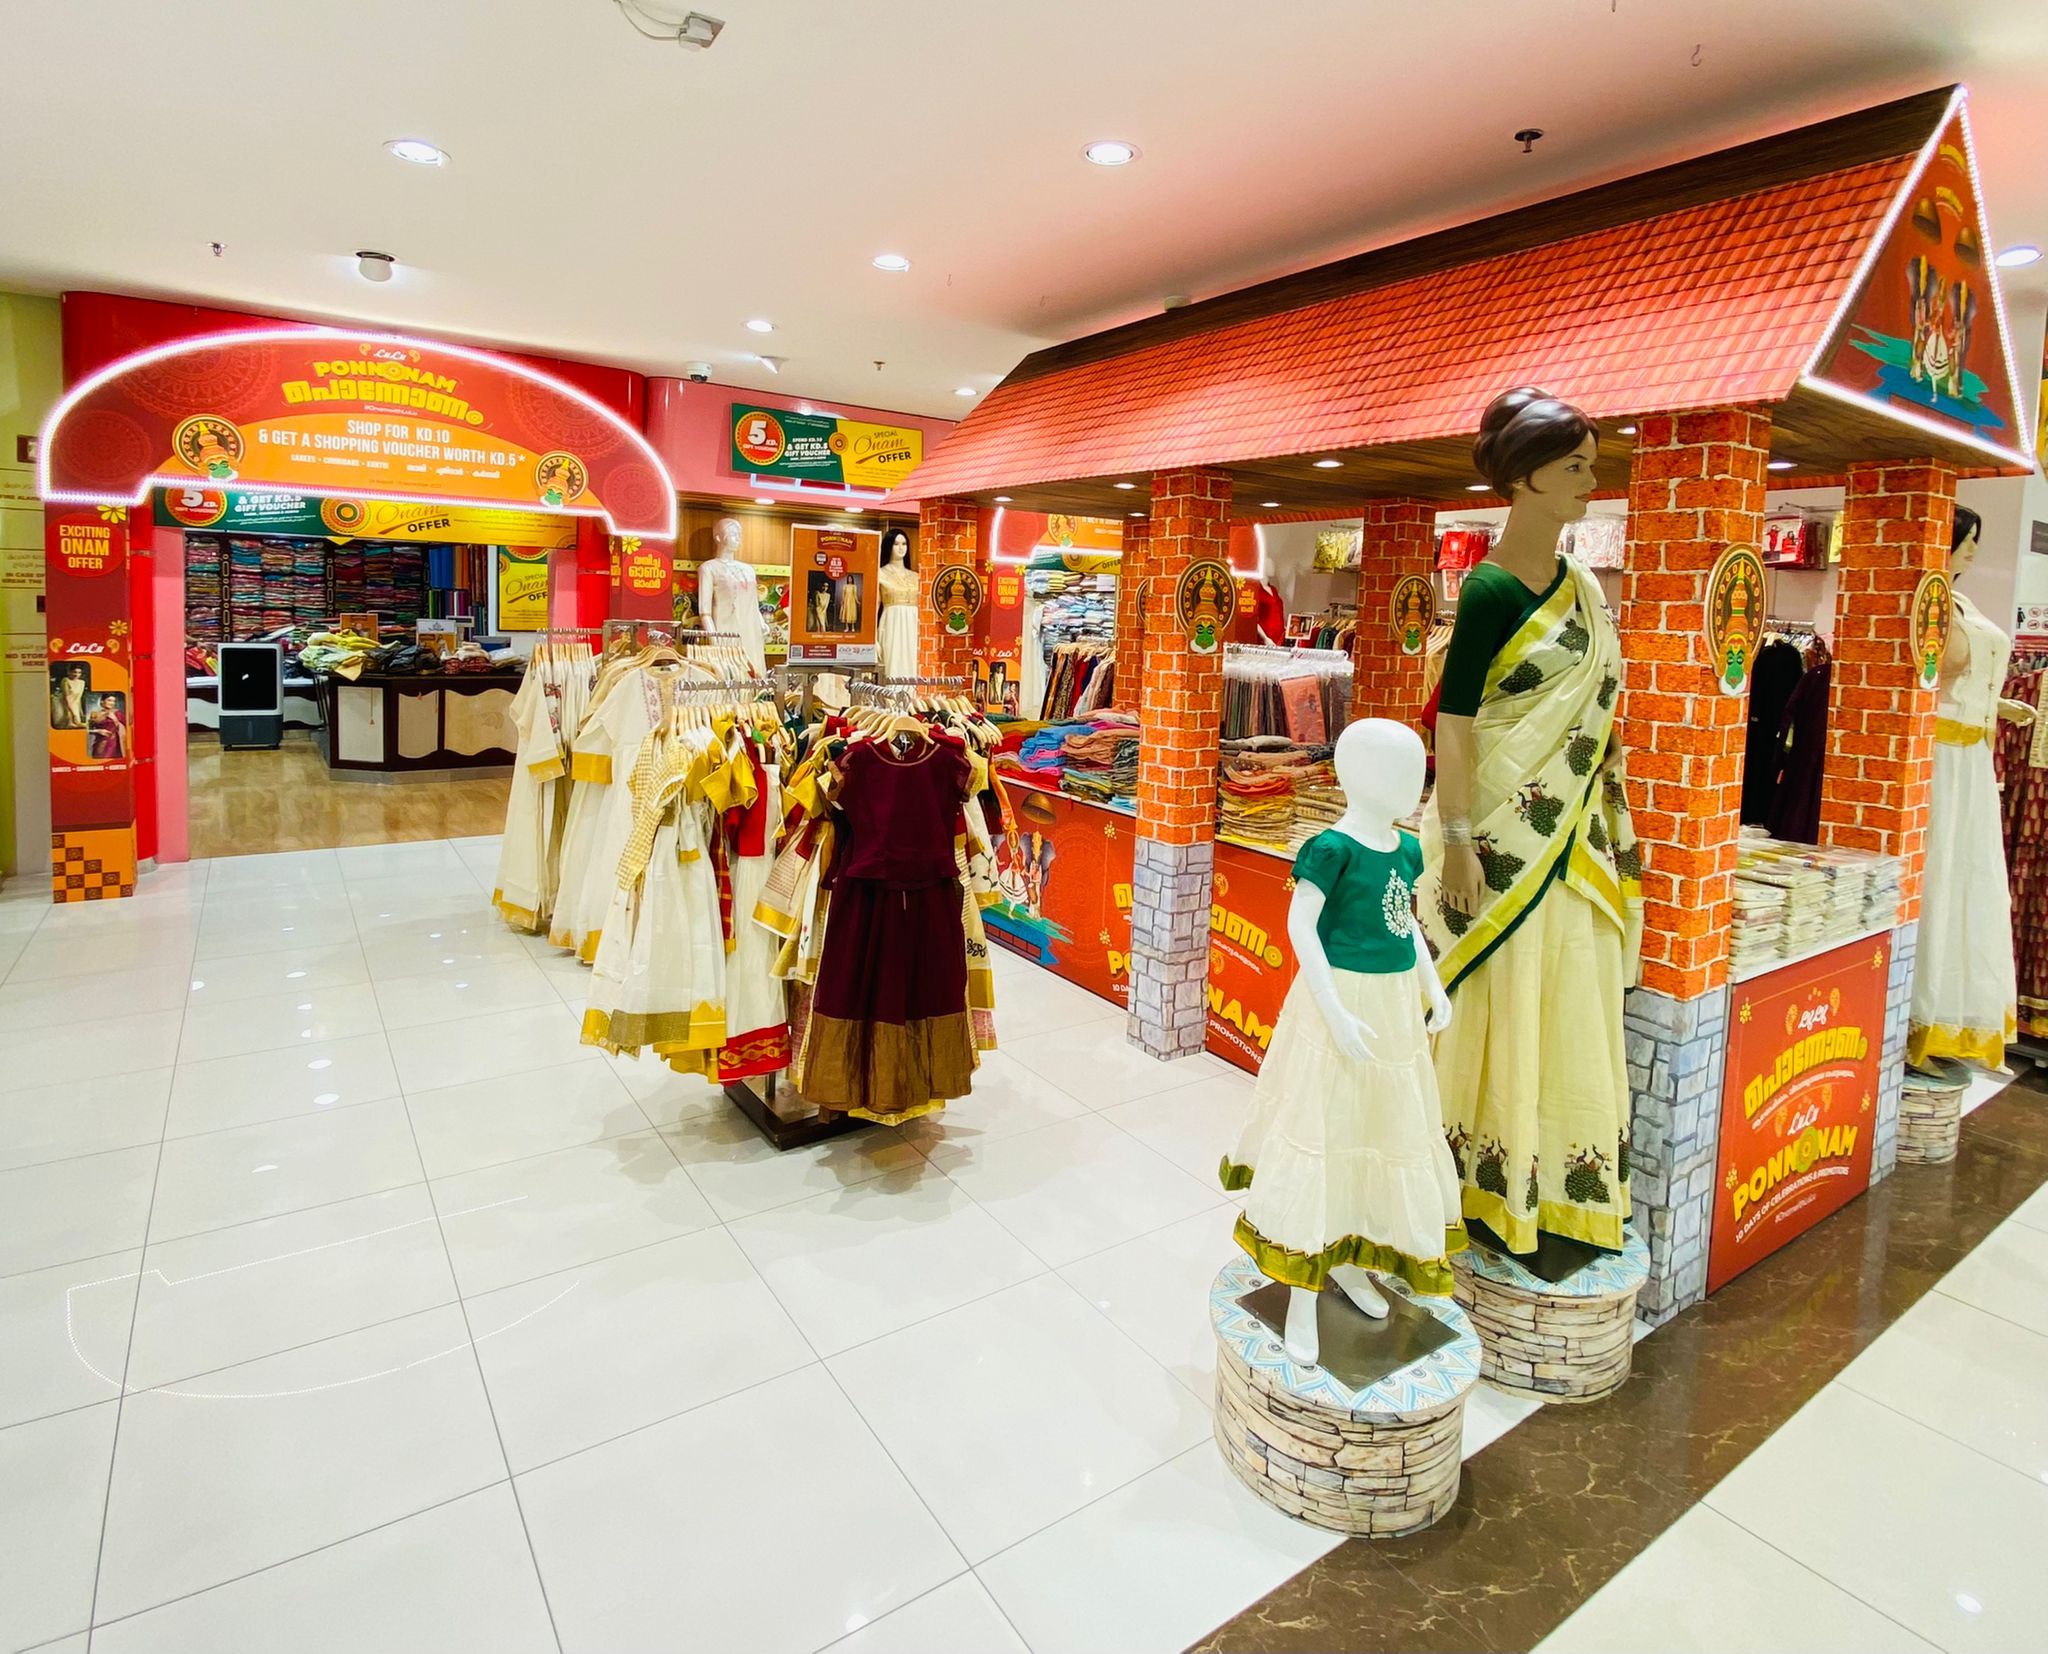 LuLu Hypermarket launches 'Summer Specials 2022' - TimesKuwait